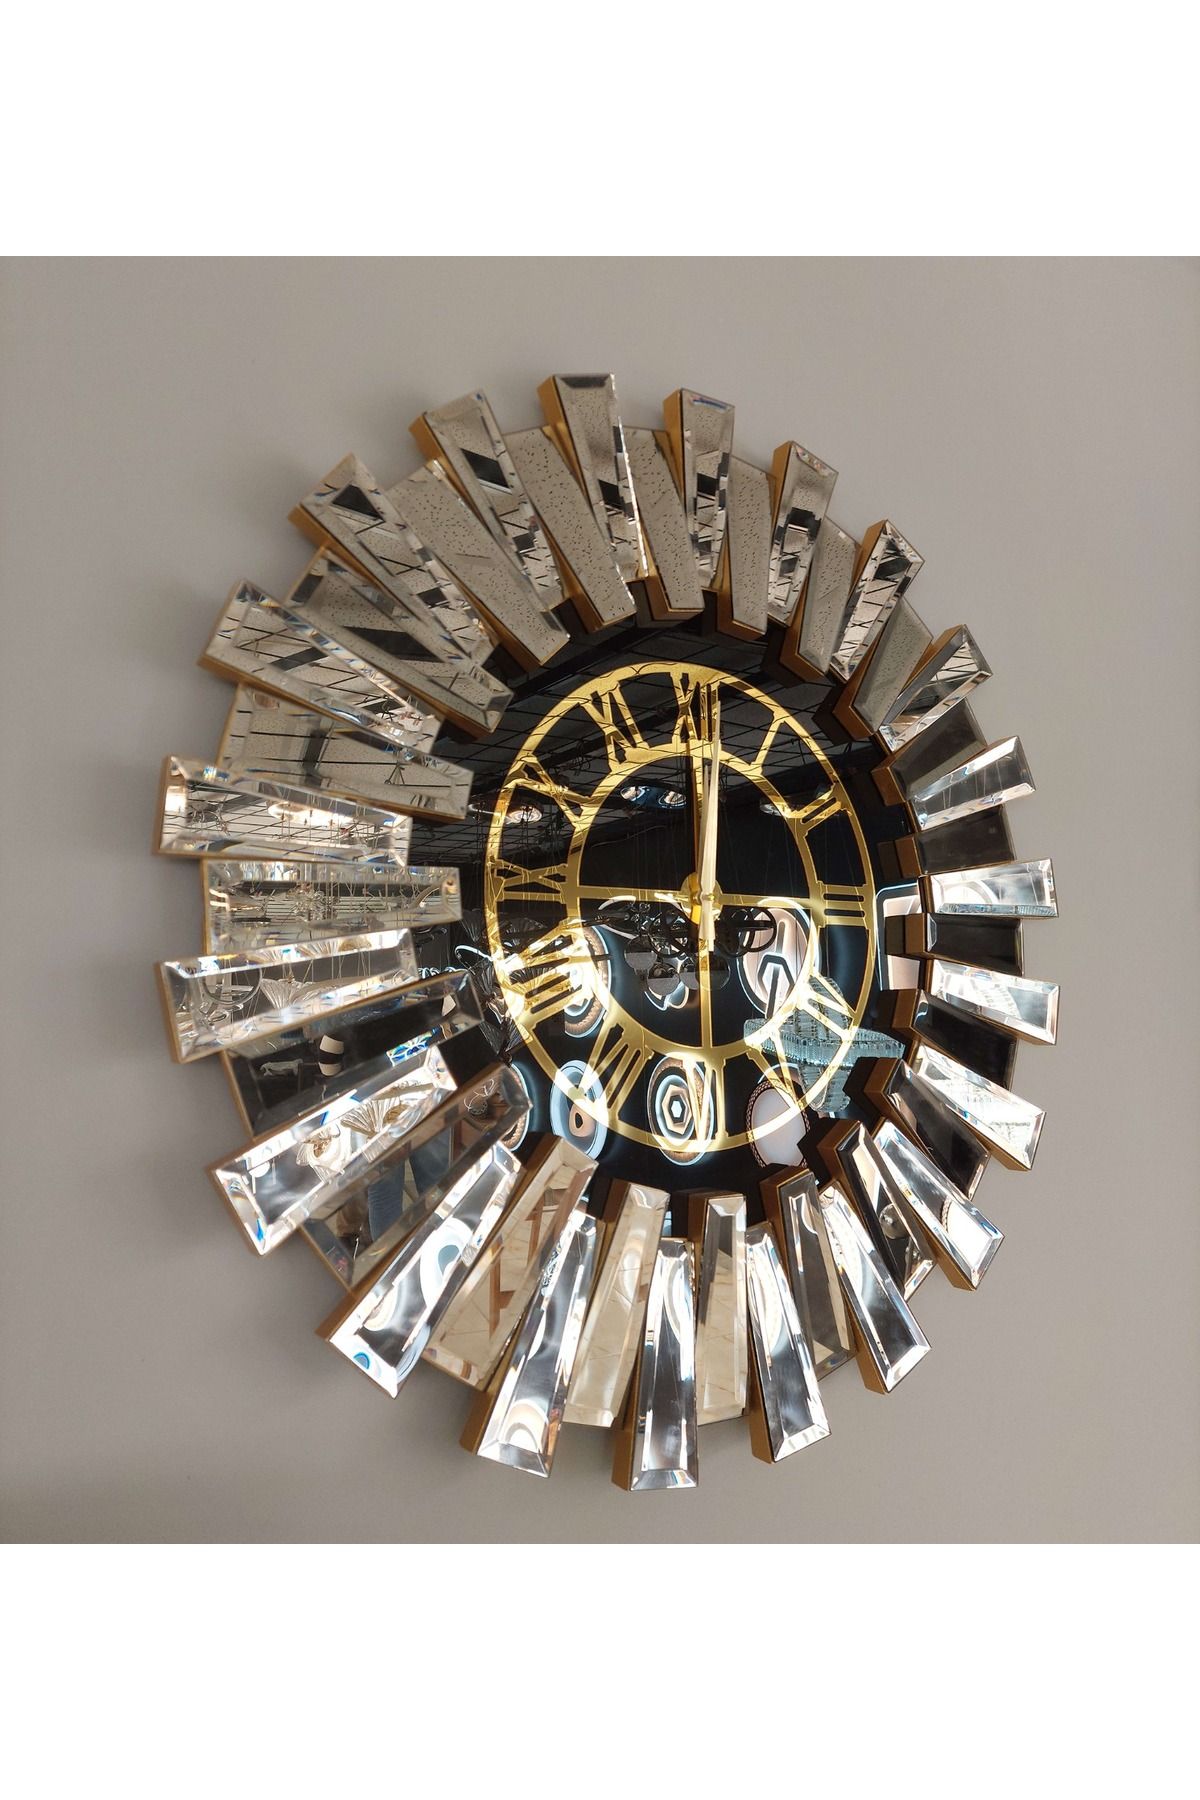 aswood Gold Aynalı  güneş piyano model pleksi rakamlı  duvar saati